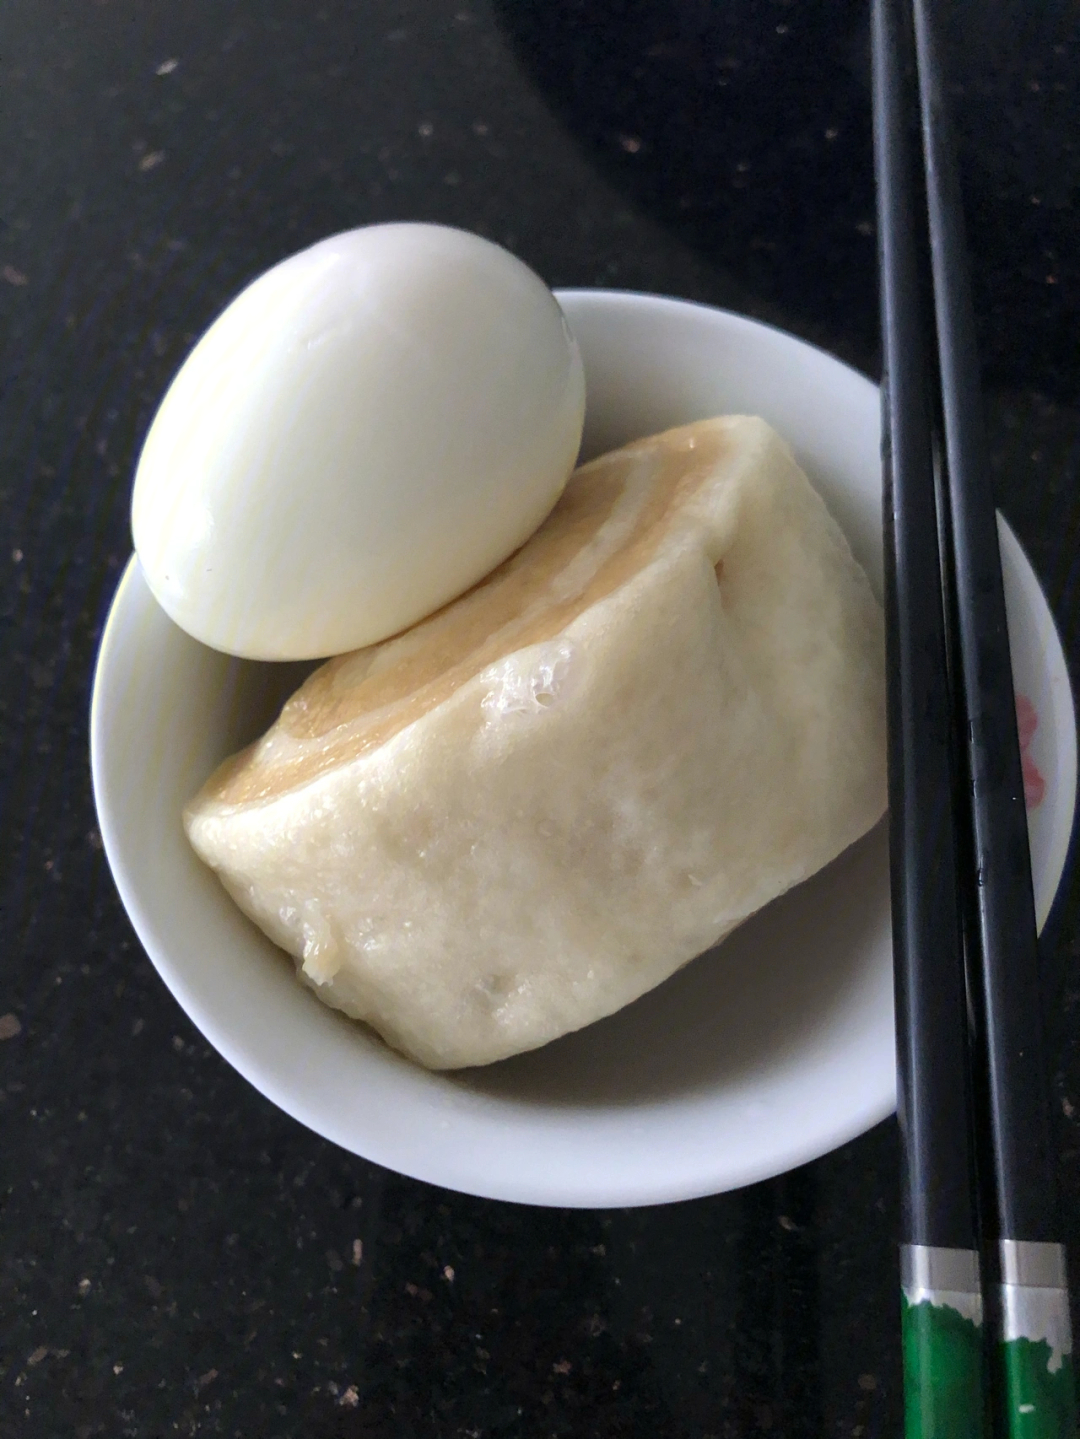 吗丁啉早餐:云吞/1个鸡蛋/1个馒头中餐:米饭/胡萝卜炒肉/大白菜晚屯